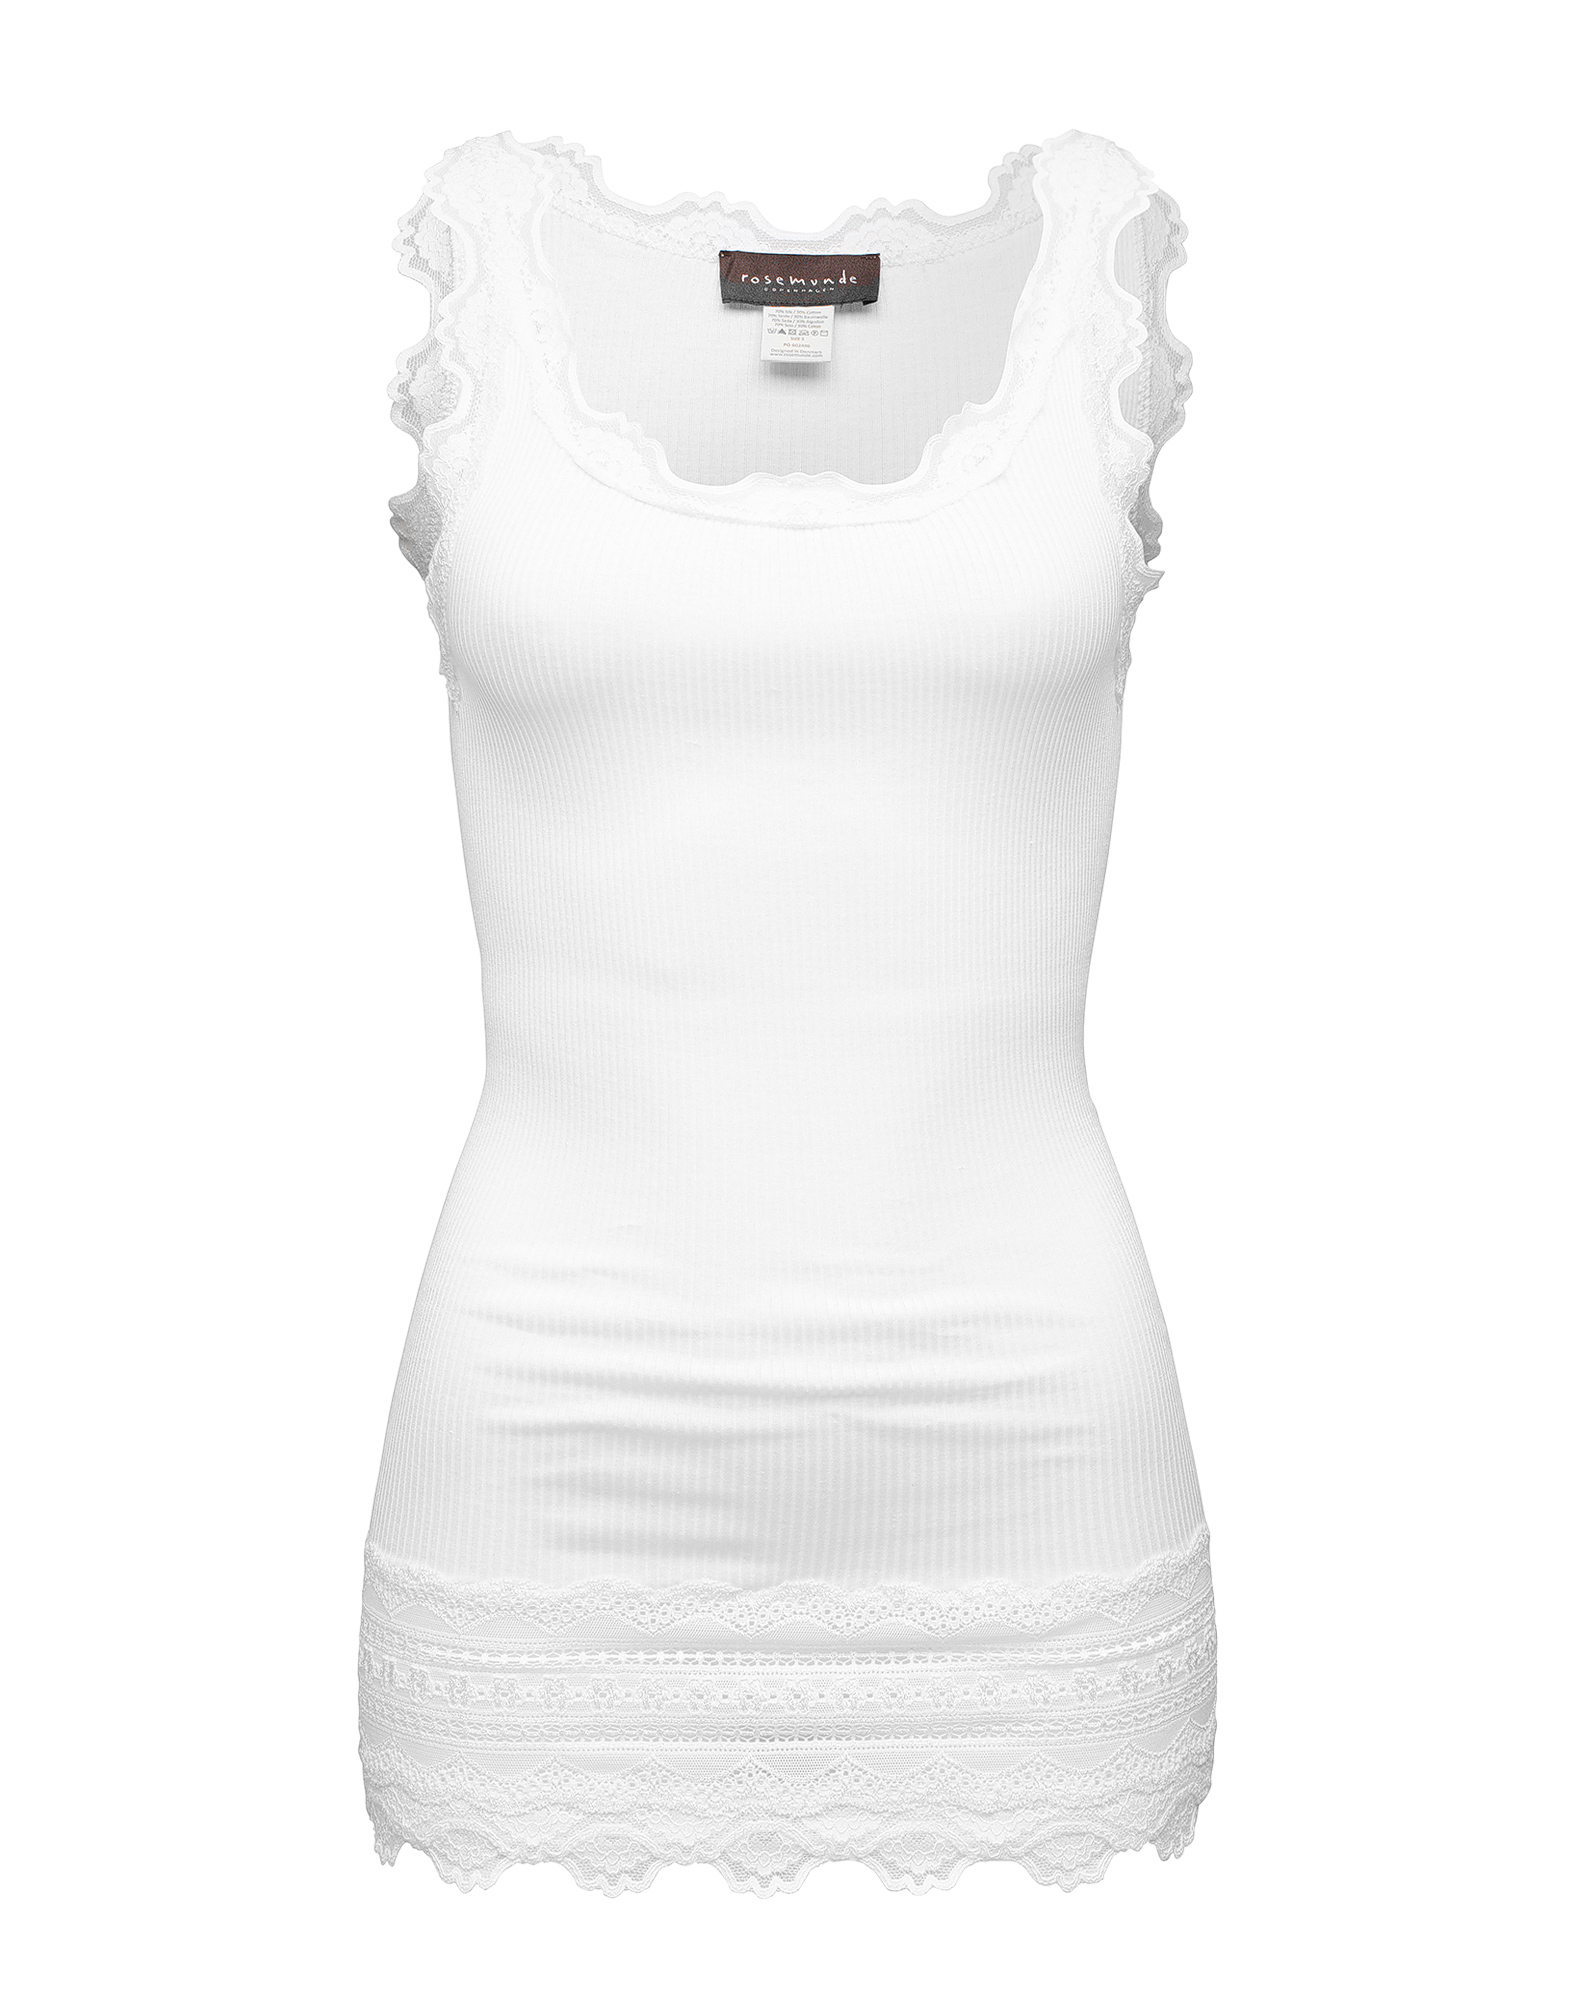 Abbigliamento Donna rosemunde Top in Bianco 